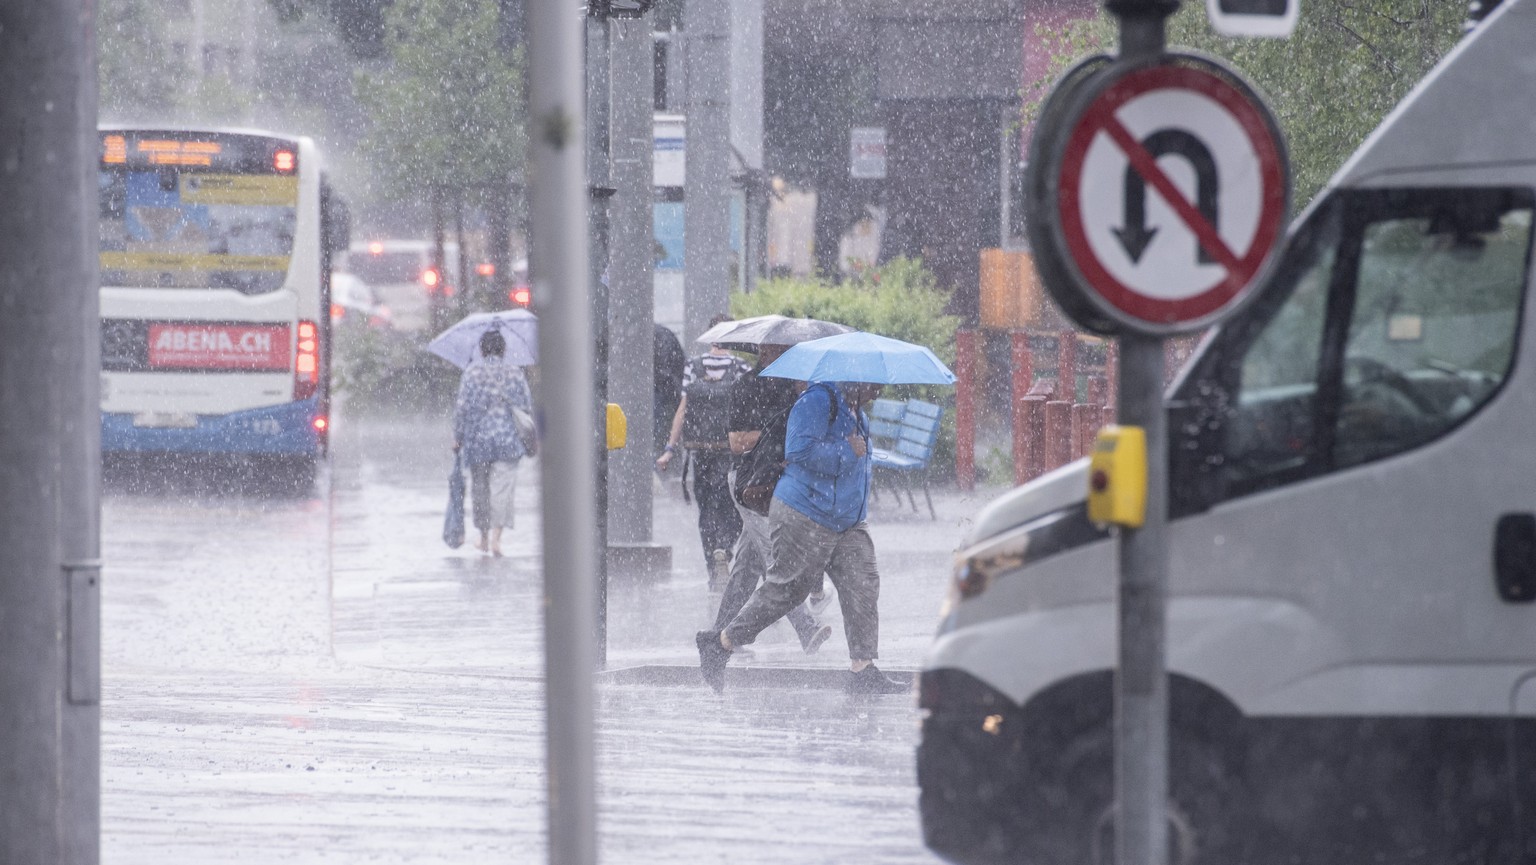 Starke Regenfaelle und Gewitter ziehen ueber die Stadt Luzern und die Zentralschweiz, am Montag, 23. Mai 2022, in Luzern (KEYSTONE/Urs Flueeler)